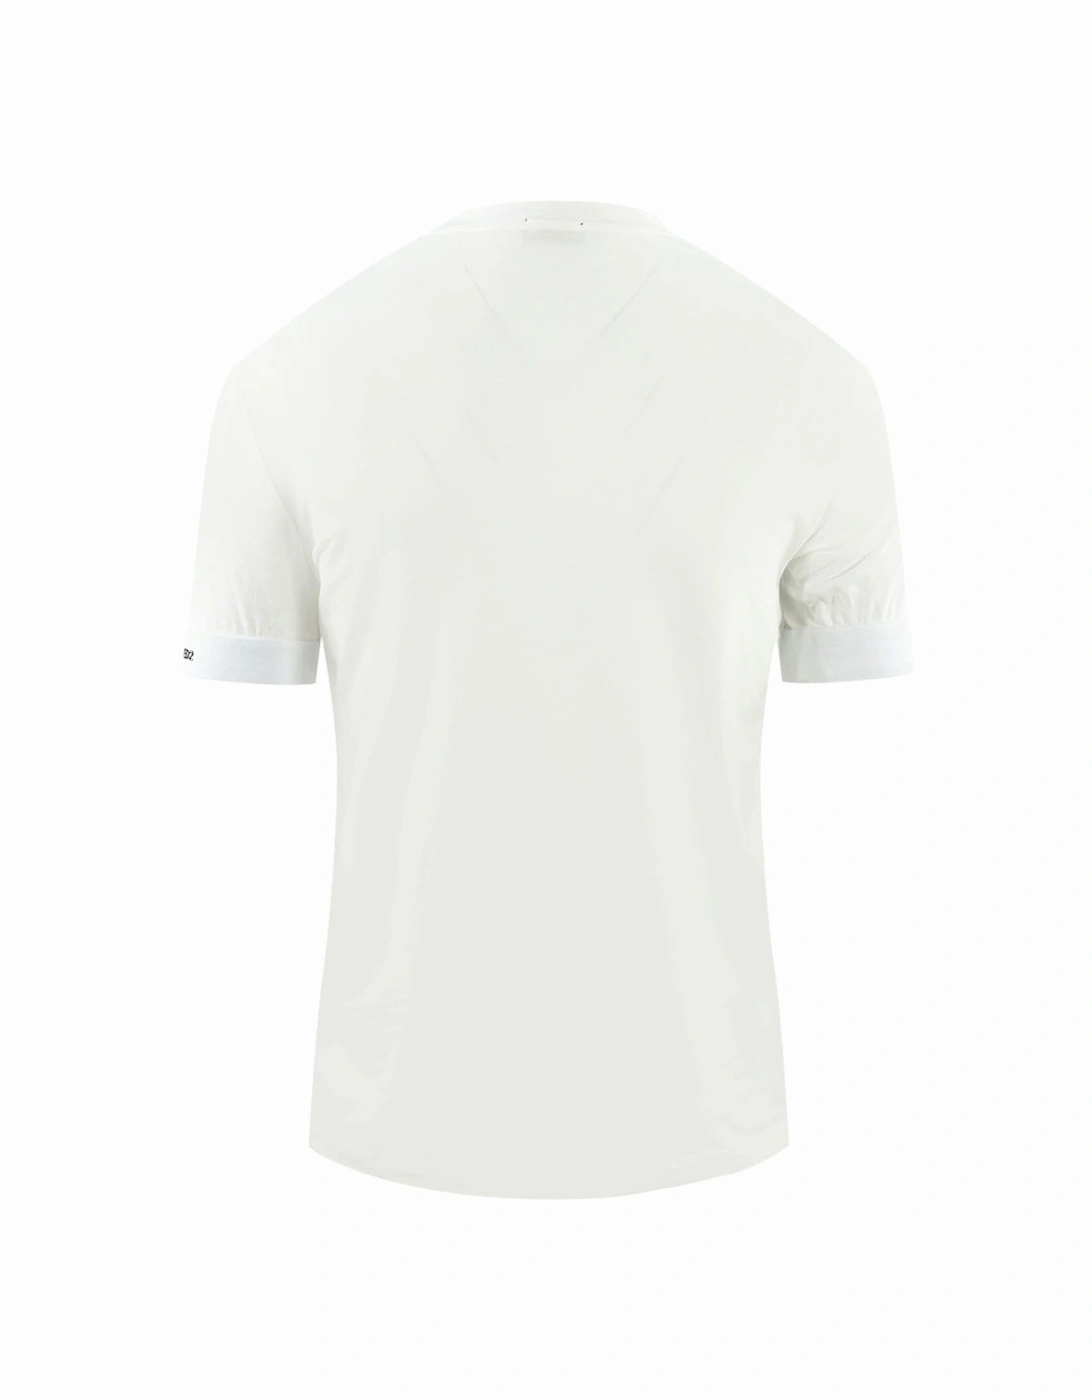 Bold Brand Logo on Sleeve White Underwear T-Shirt